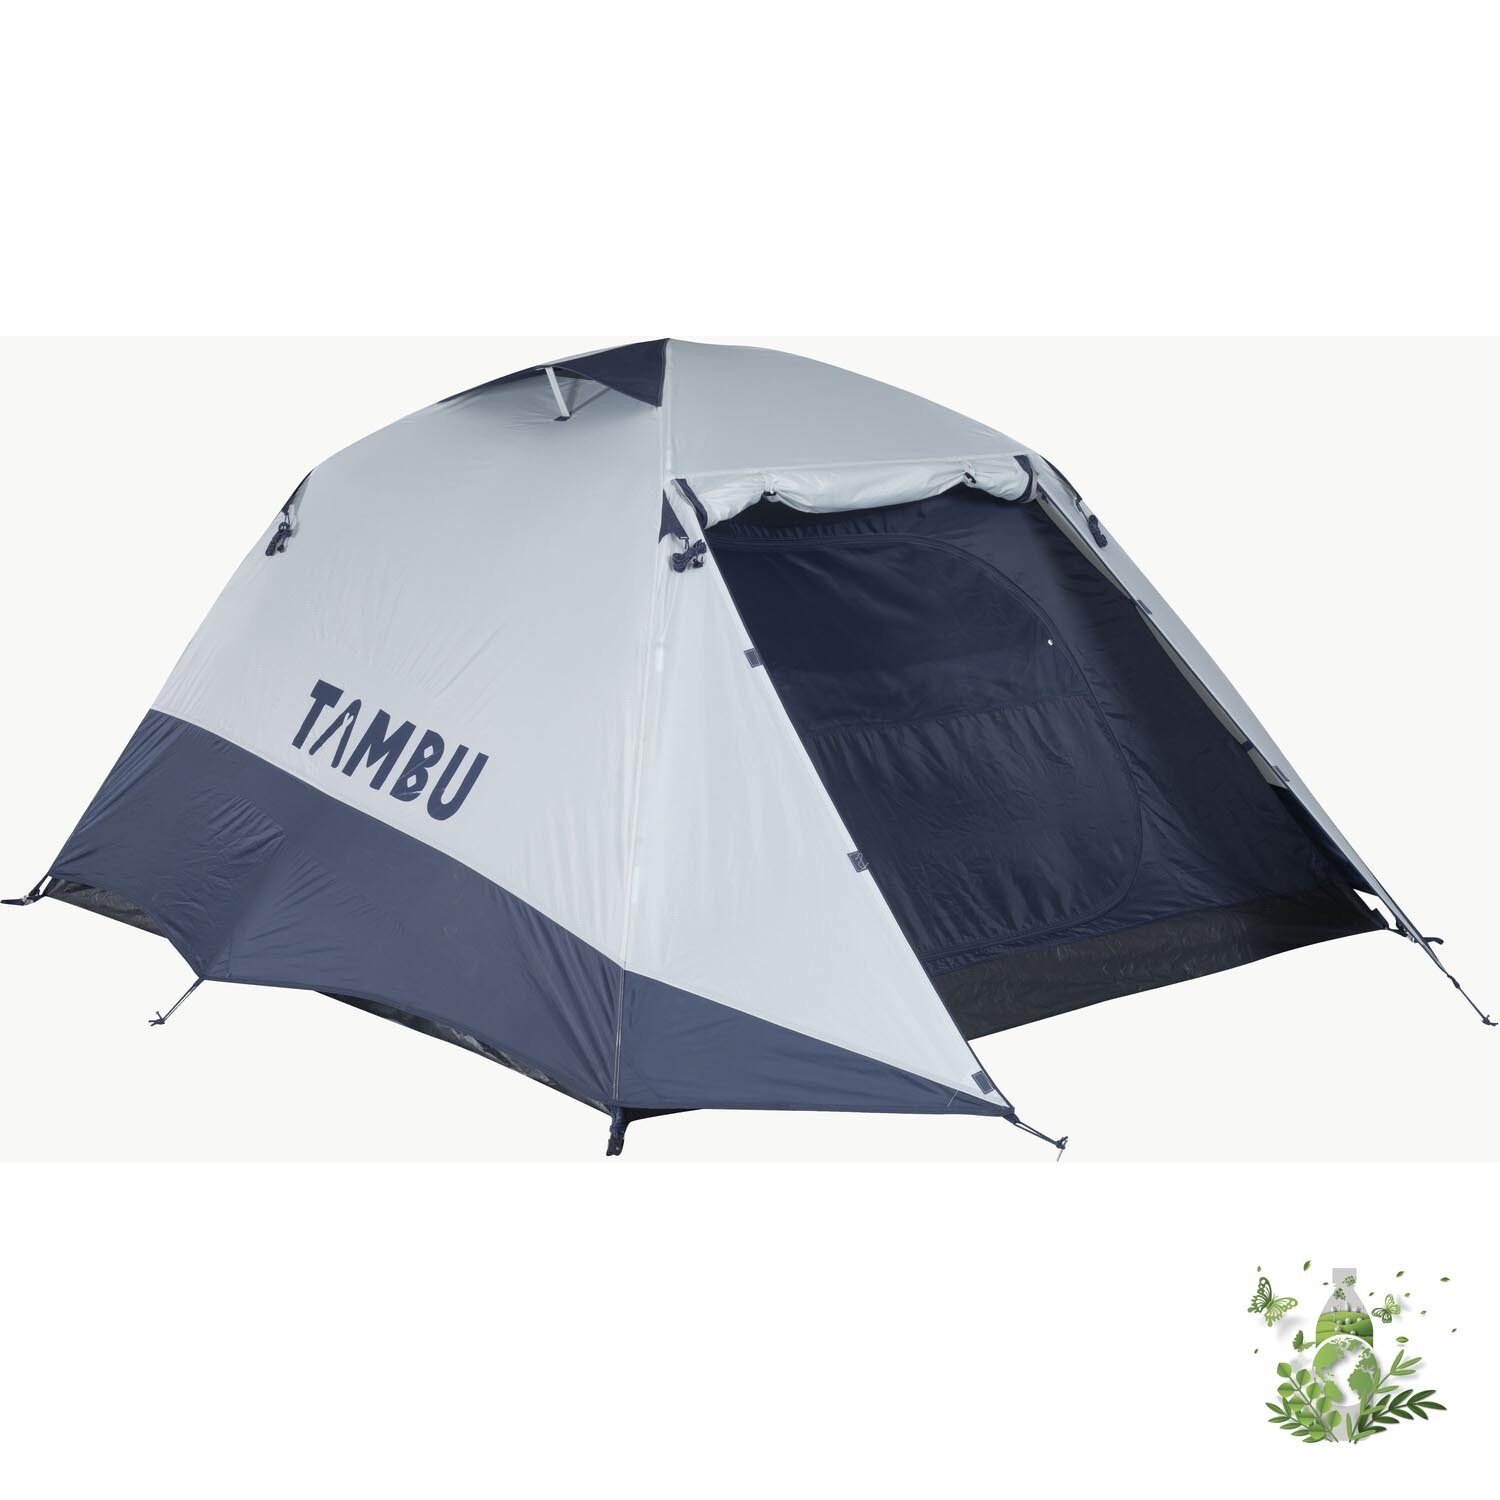 Tambu GAMBUJA Dome Tent - Three Image 7